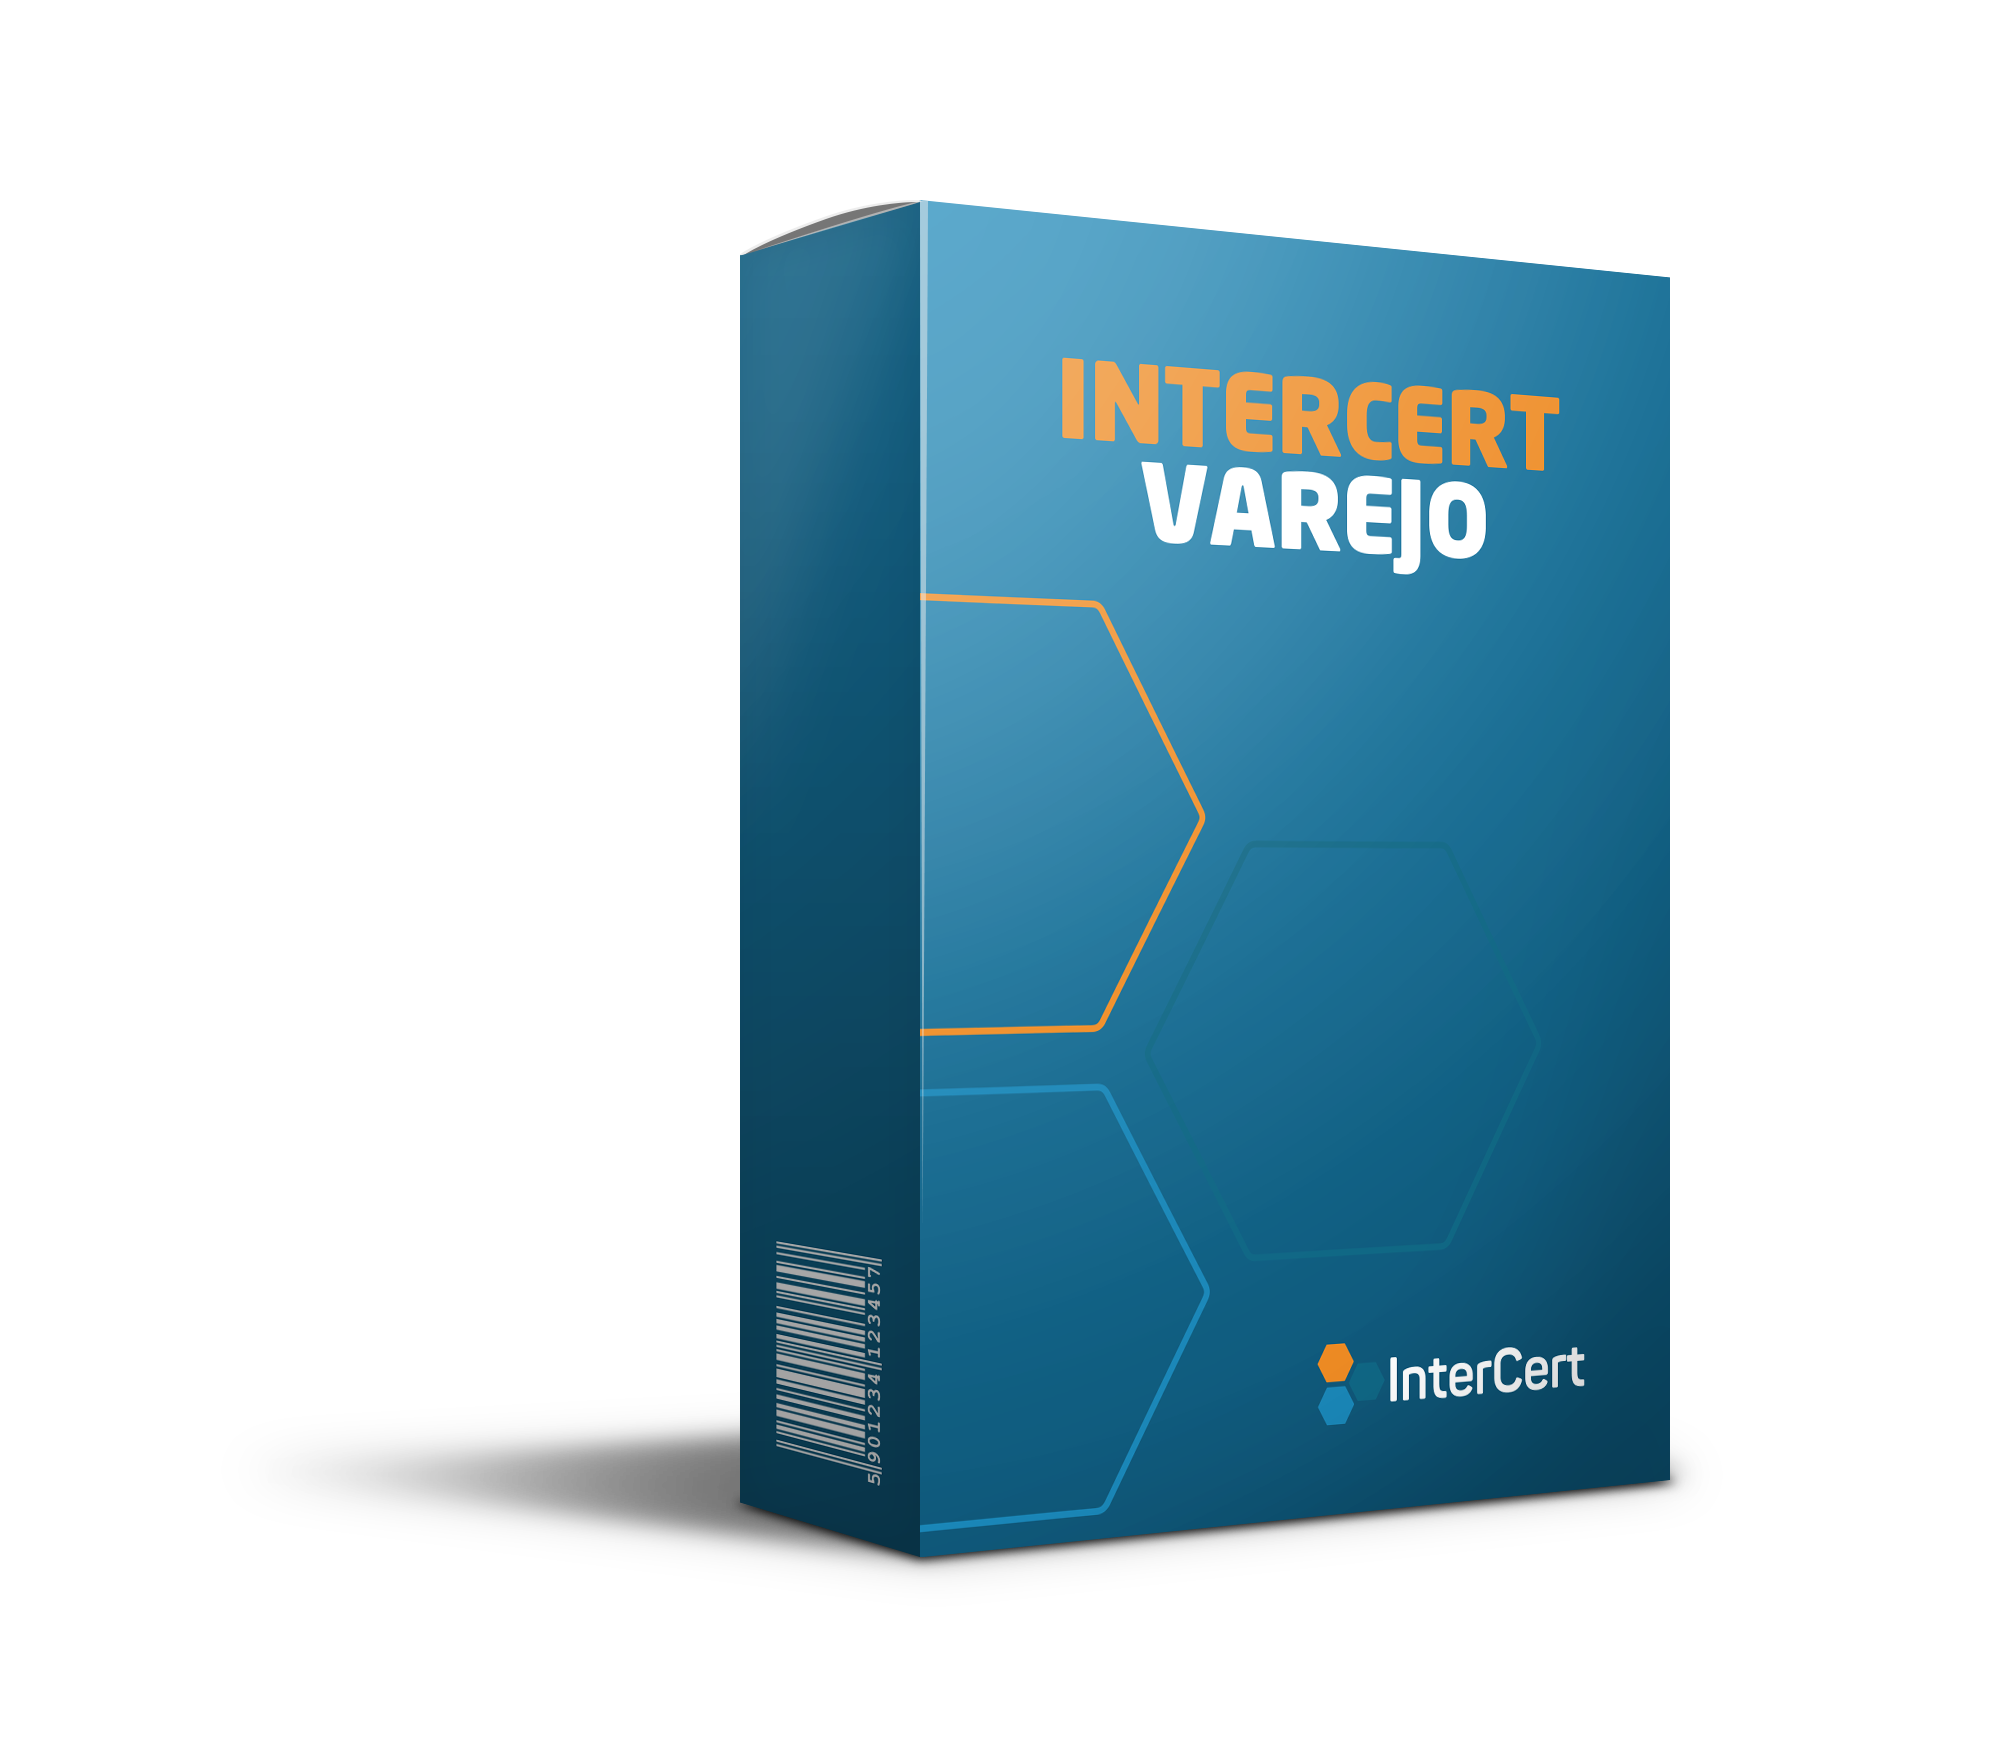 InterCert Varejo